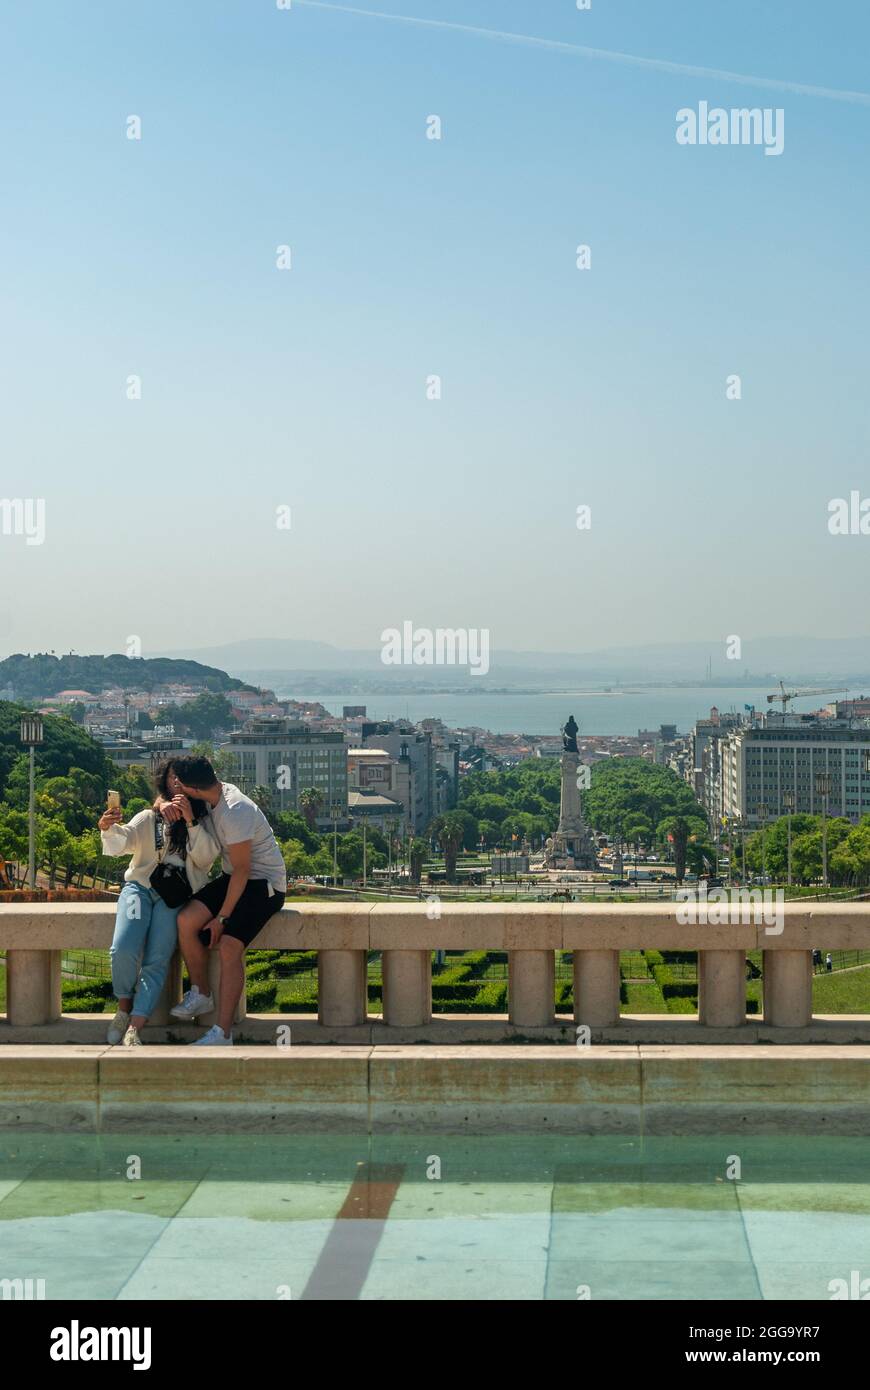 Lissabon, Portugal - 29. Mai 2021: Ein Paar, das sich vor dem Hintergrund der Stadt Lissabon küsst - Portugal, Vertikal, selektiver Fokus Stockfoto